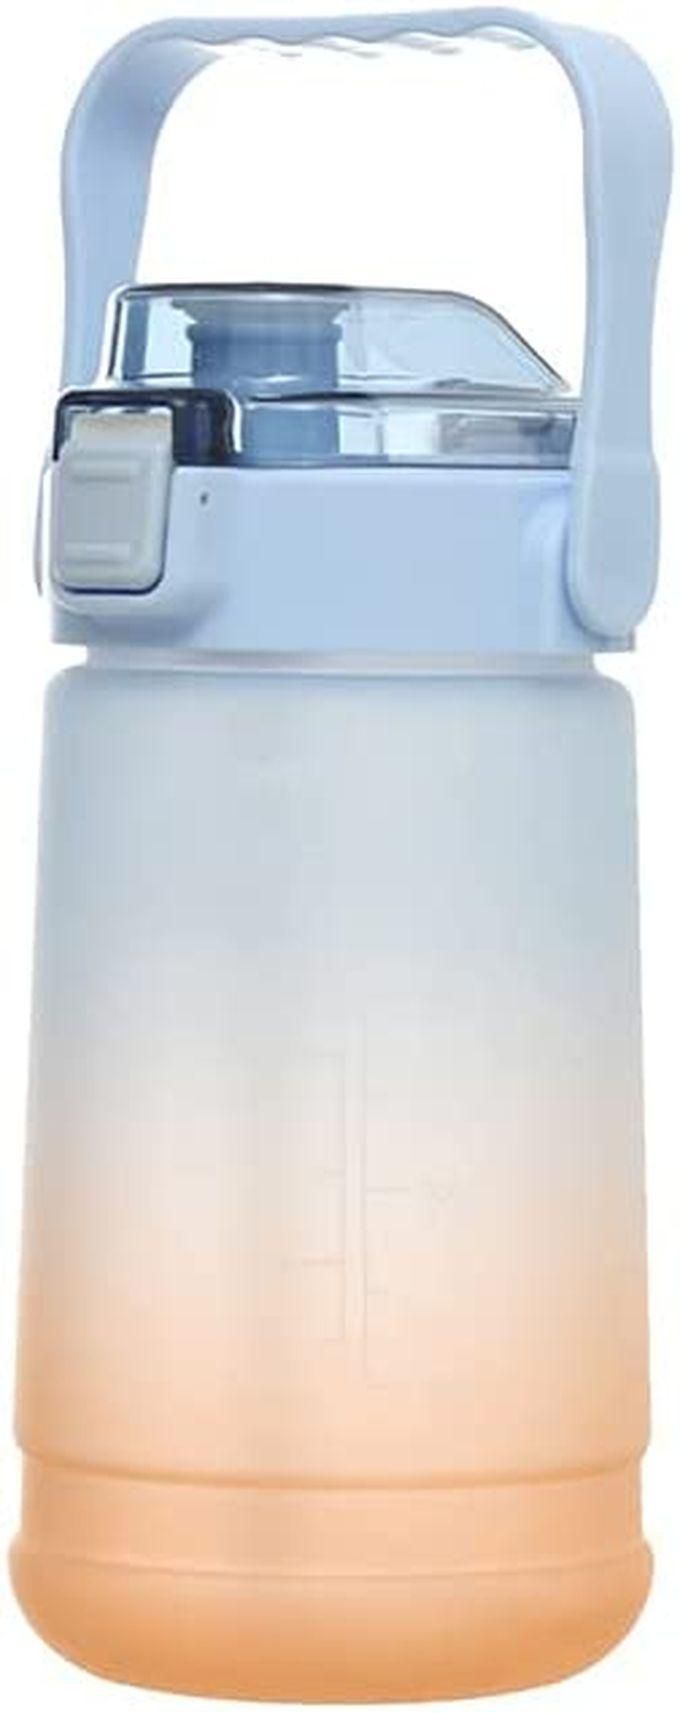 زجاجة المياه الرقمية لشرب المياه علي مدار اليوم - 1لتر